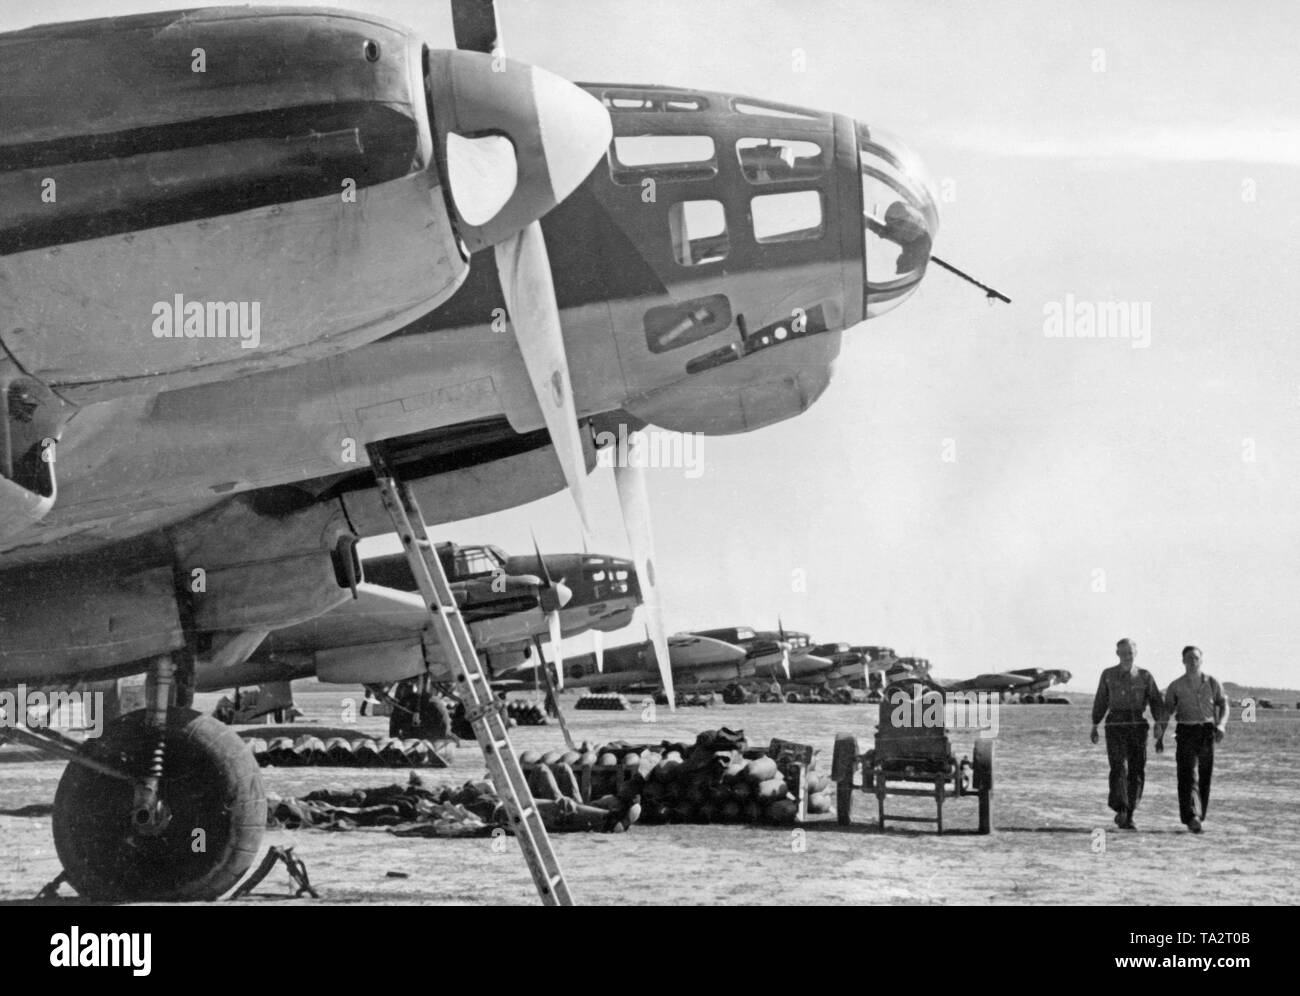 Photo de l'Allemand Heinkel He 111 bombardiers de la légion Condor (groupe de combat) 88 sur l'aérodrome de Lérida, Catalogne, 1939. En face de la bombe il y a des grenades. Deux agents de la personnel au sol sont la marche à côté d'eux. Sur la photo, l'avant compartiment Gunner, qui a été faite de plexiglass avec une mitrailleuse intégrée pour la défense d'avions de chasse. Banque D'Images